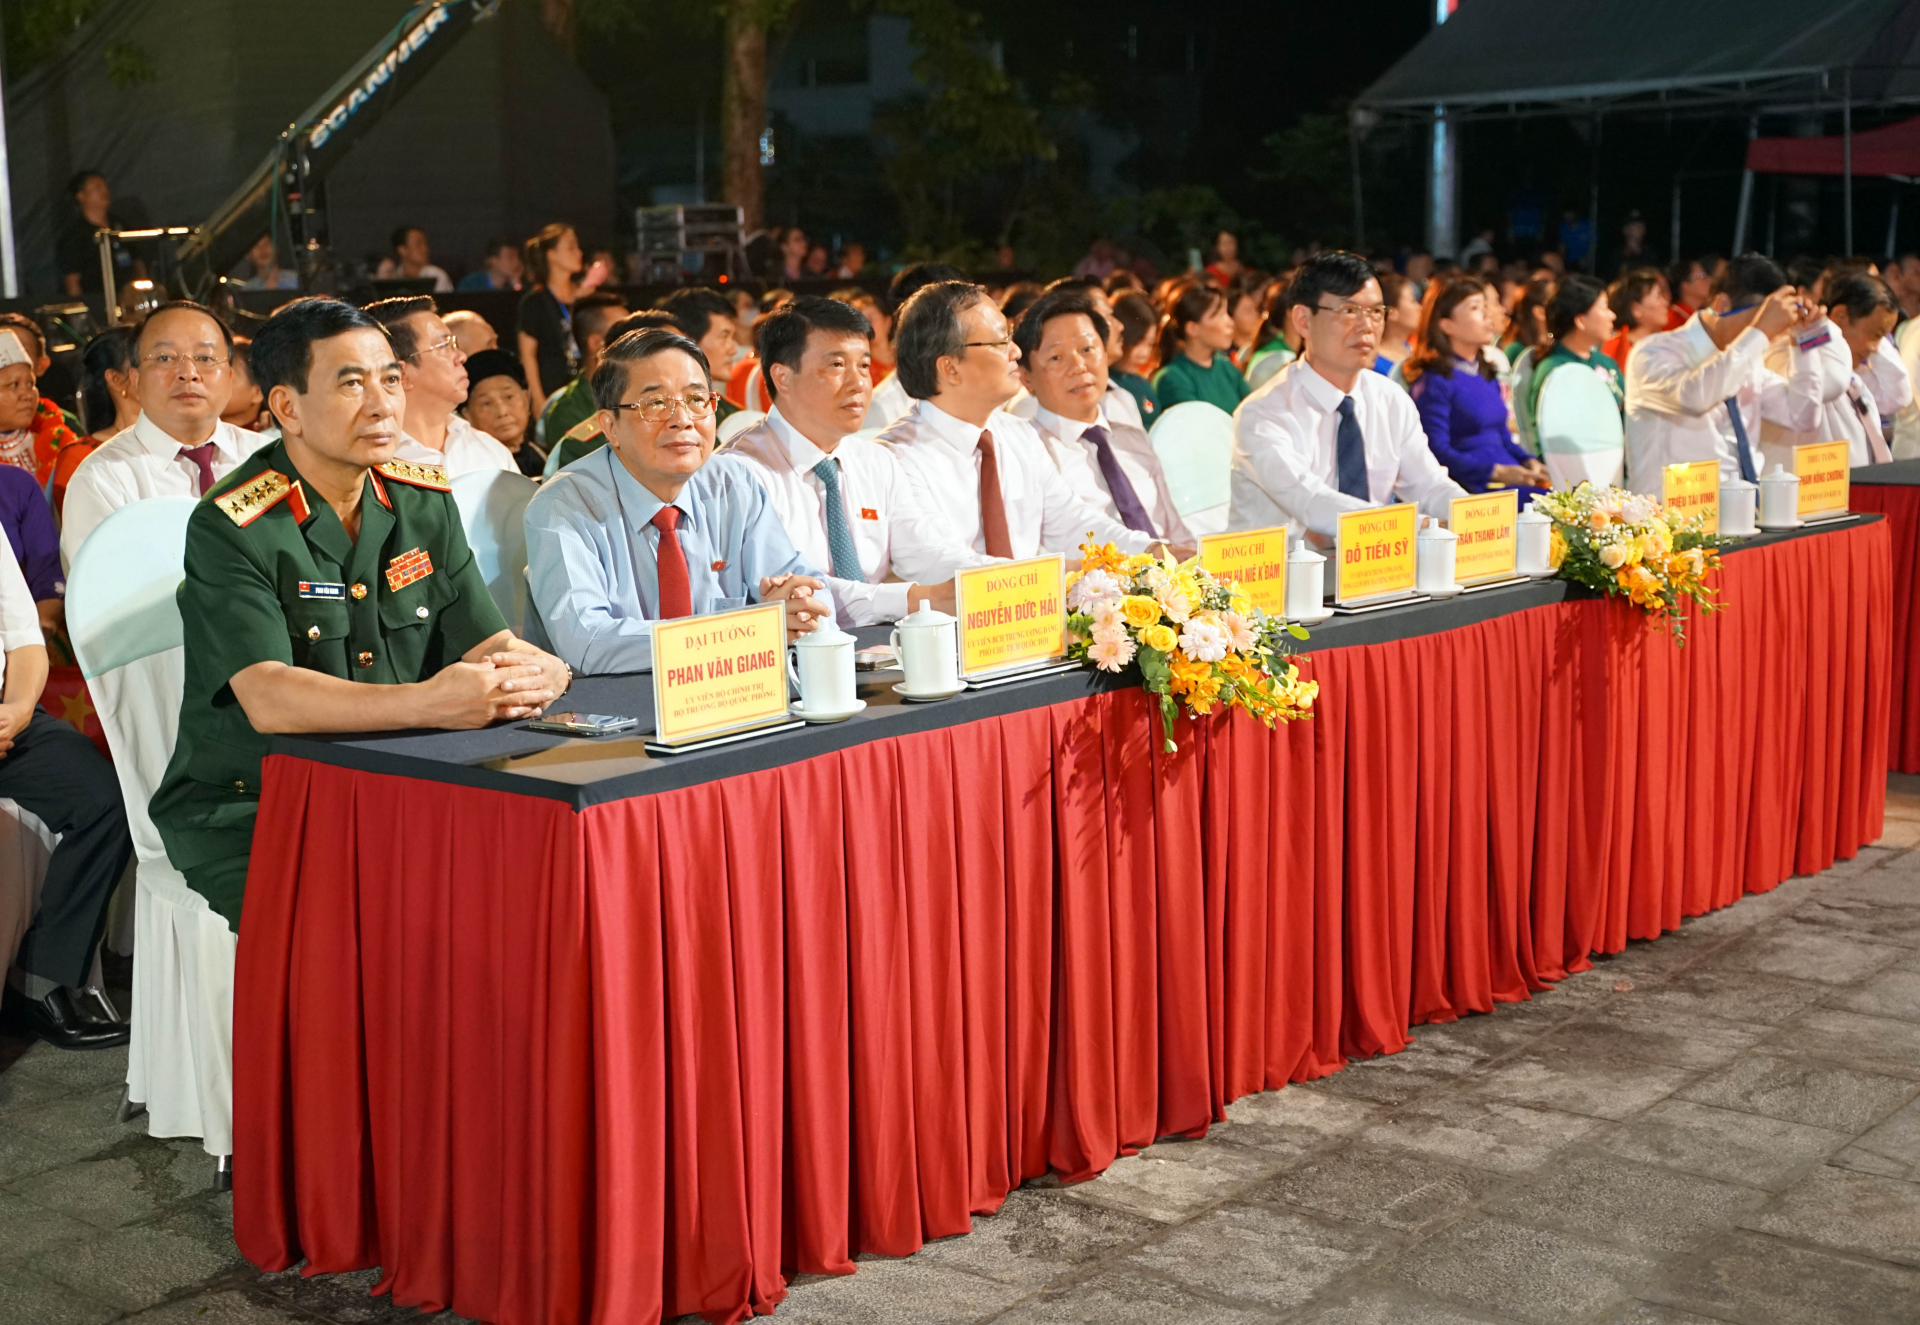 Đại tướng Phan Văn Giang, Bộ trưởng Bộ Quốc phòng cùng các đại biểu tham dự Chương trình cầu truyền hình “Khúc tráng ca hòa bình” tại điểm cầu Nghĩa trang Liệt sỹ Quốc gia Vị Xuyên.